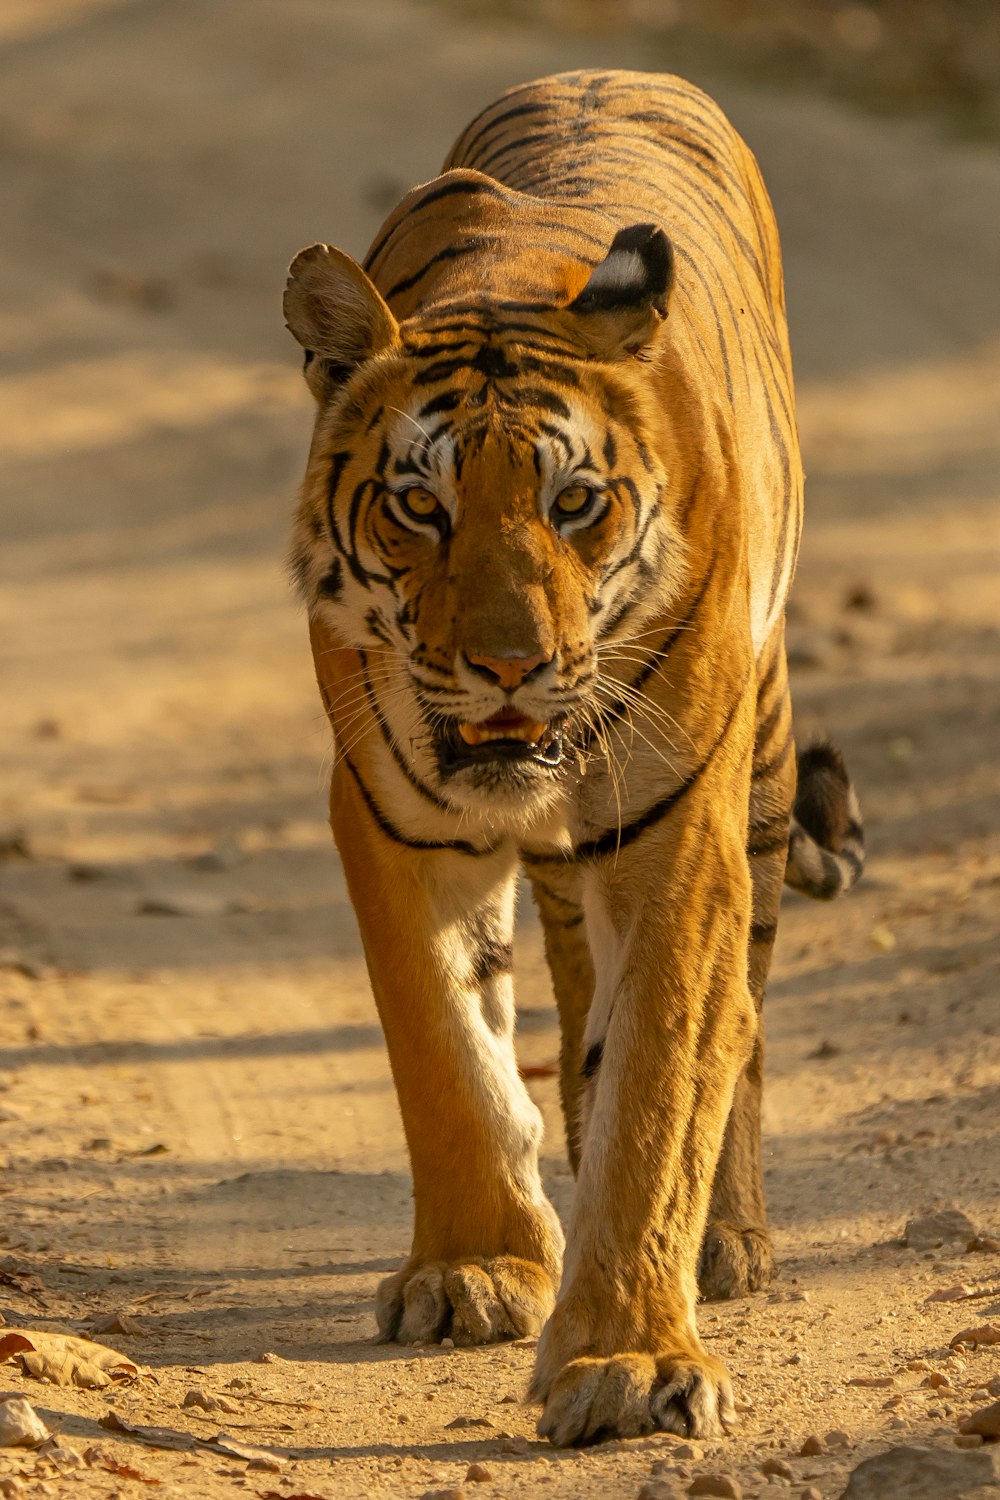 tigre marrom andando na areia marrom durante o dia